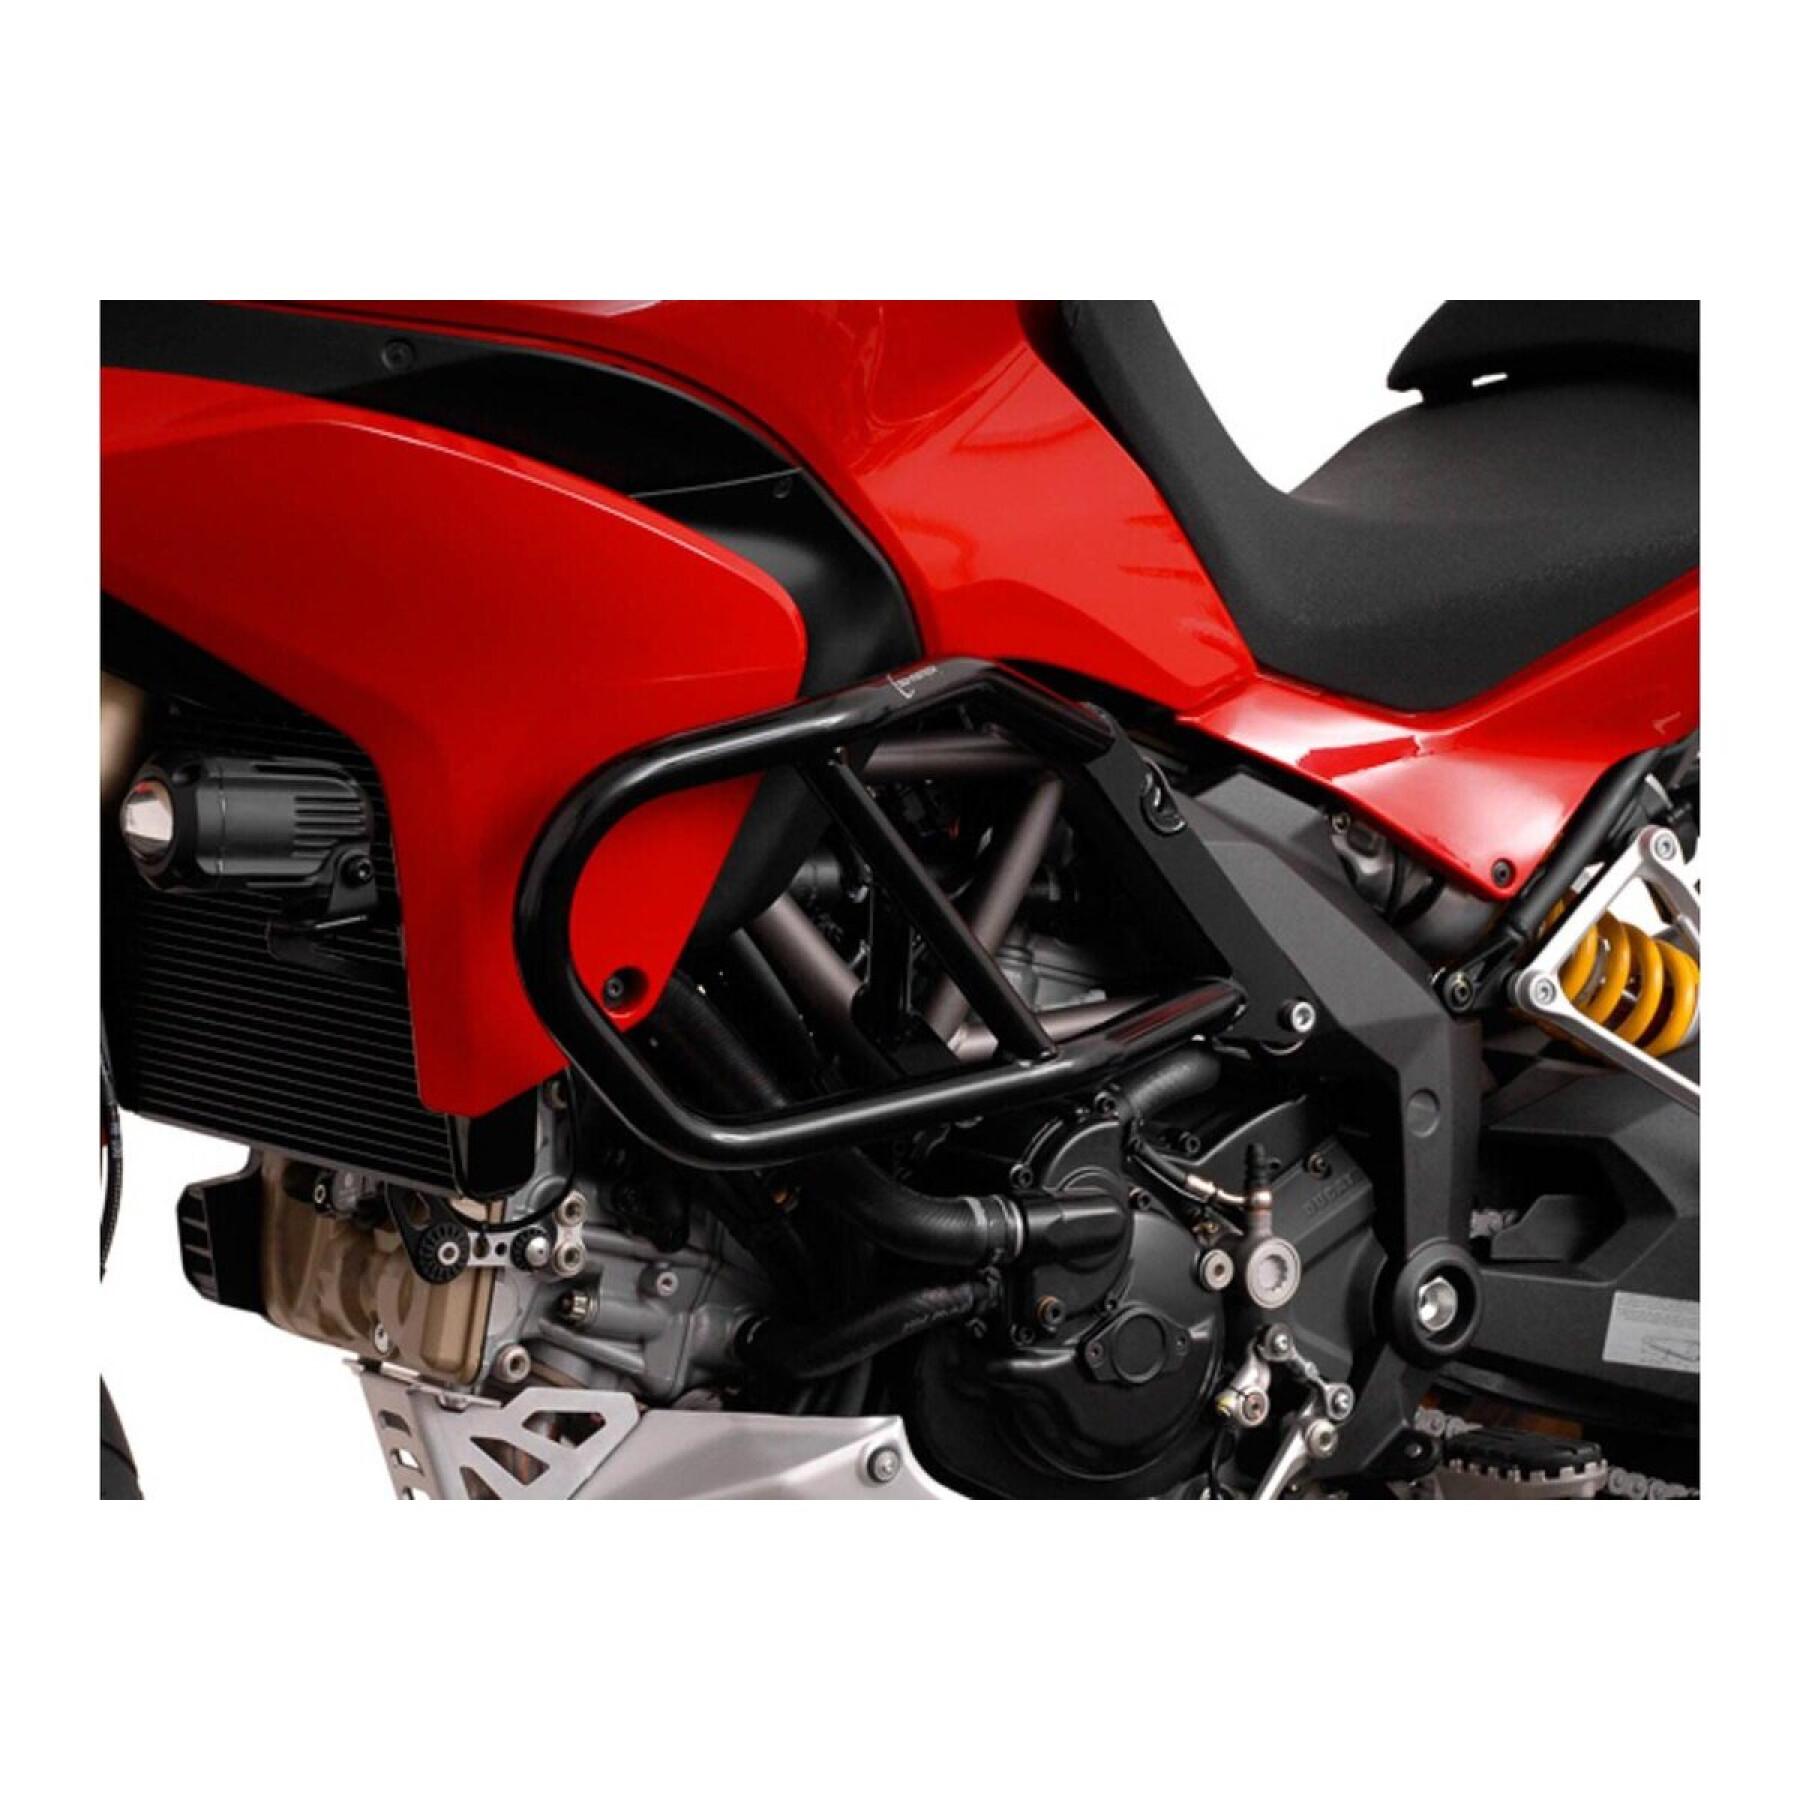 Set van 2 motorfietskuipen SW-Motech Ducati Multistrada 1200 / S (10-14)